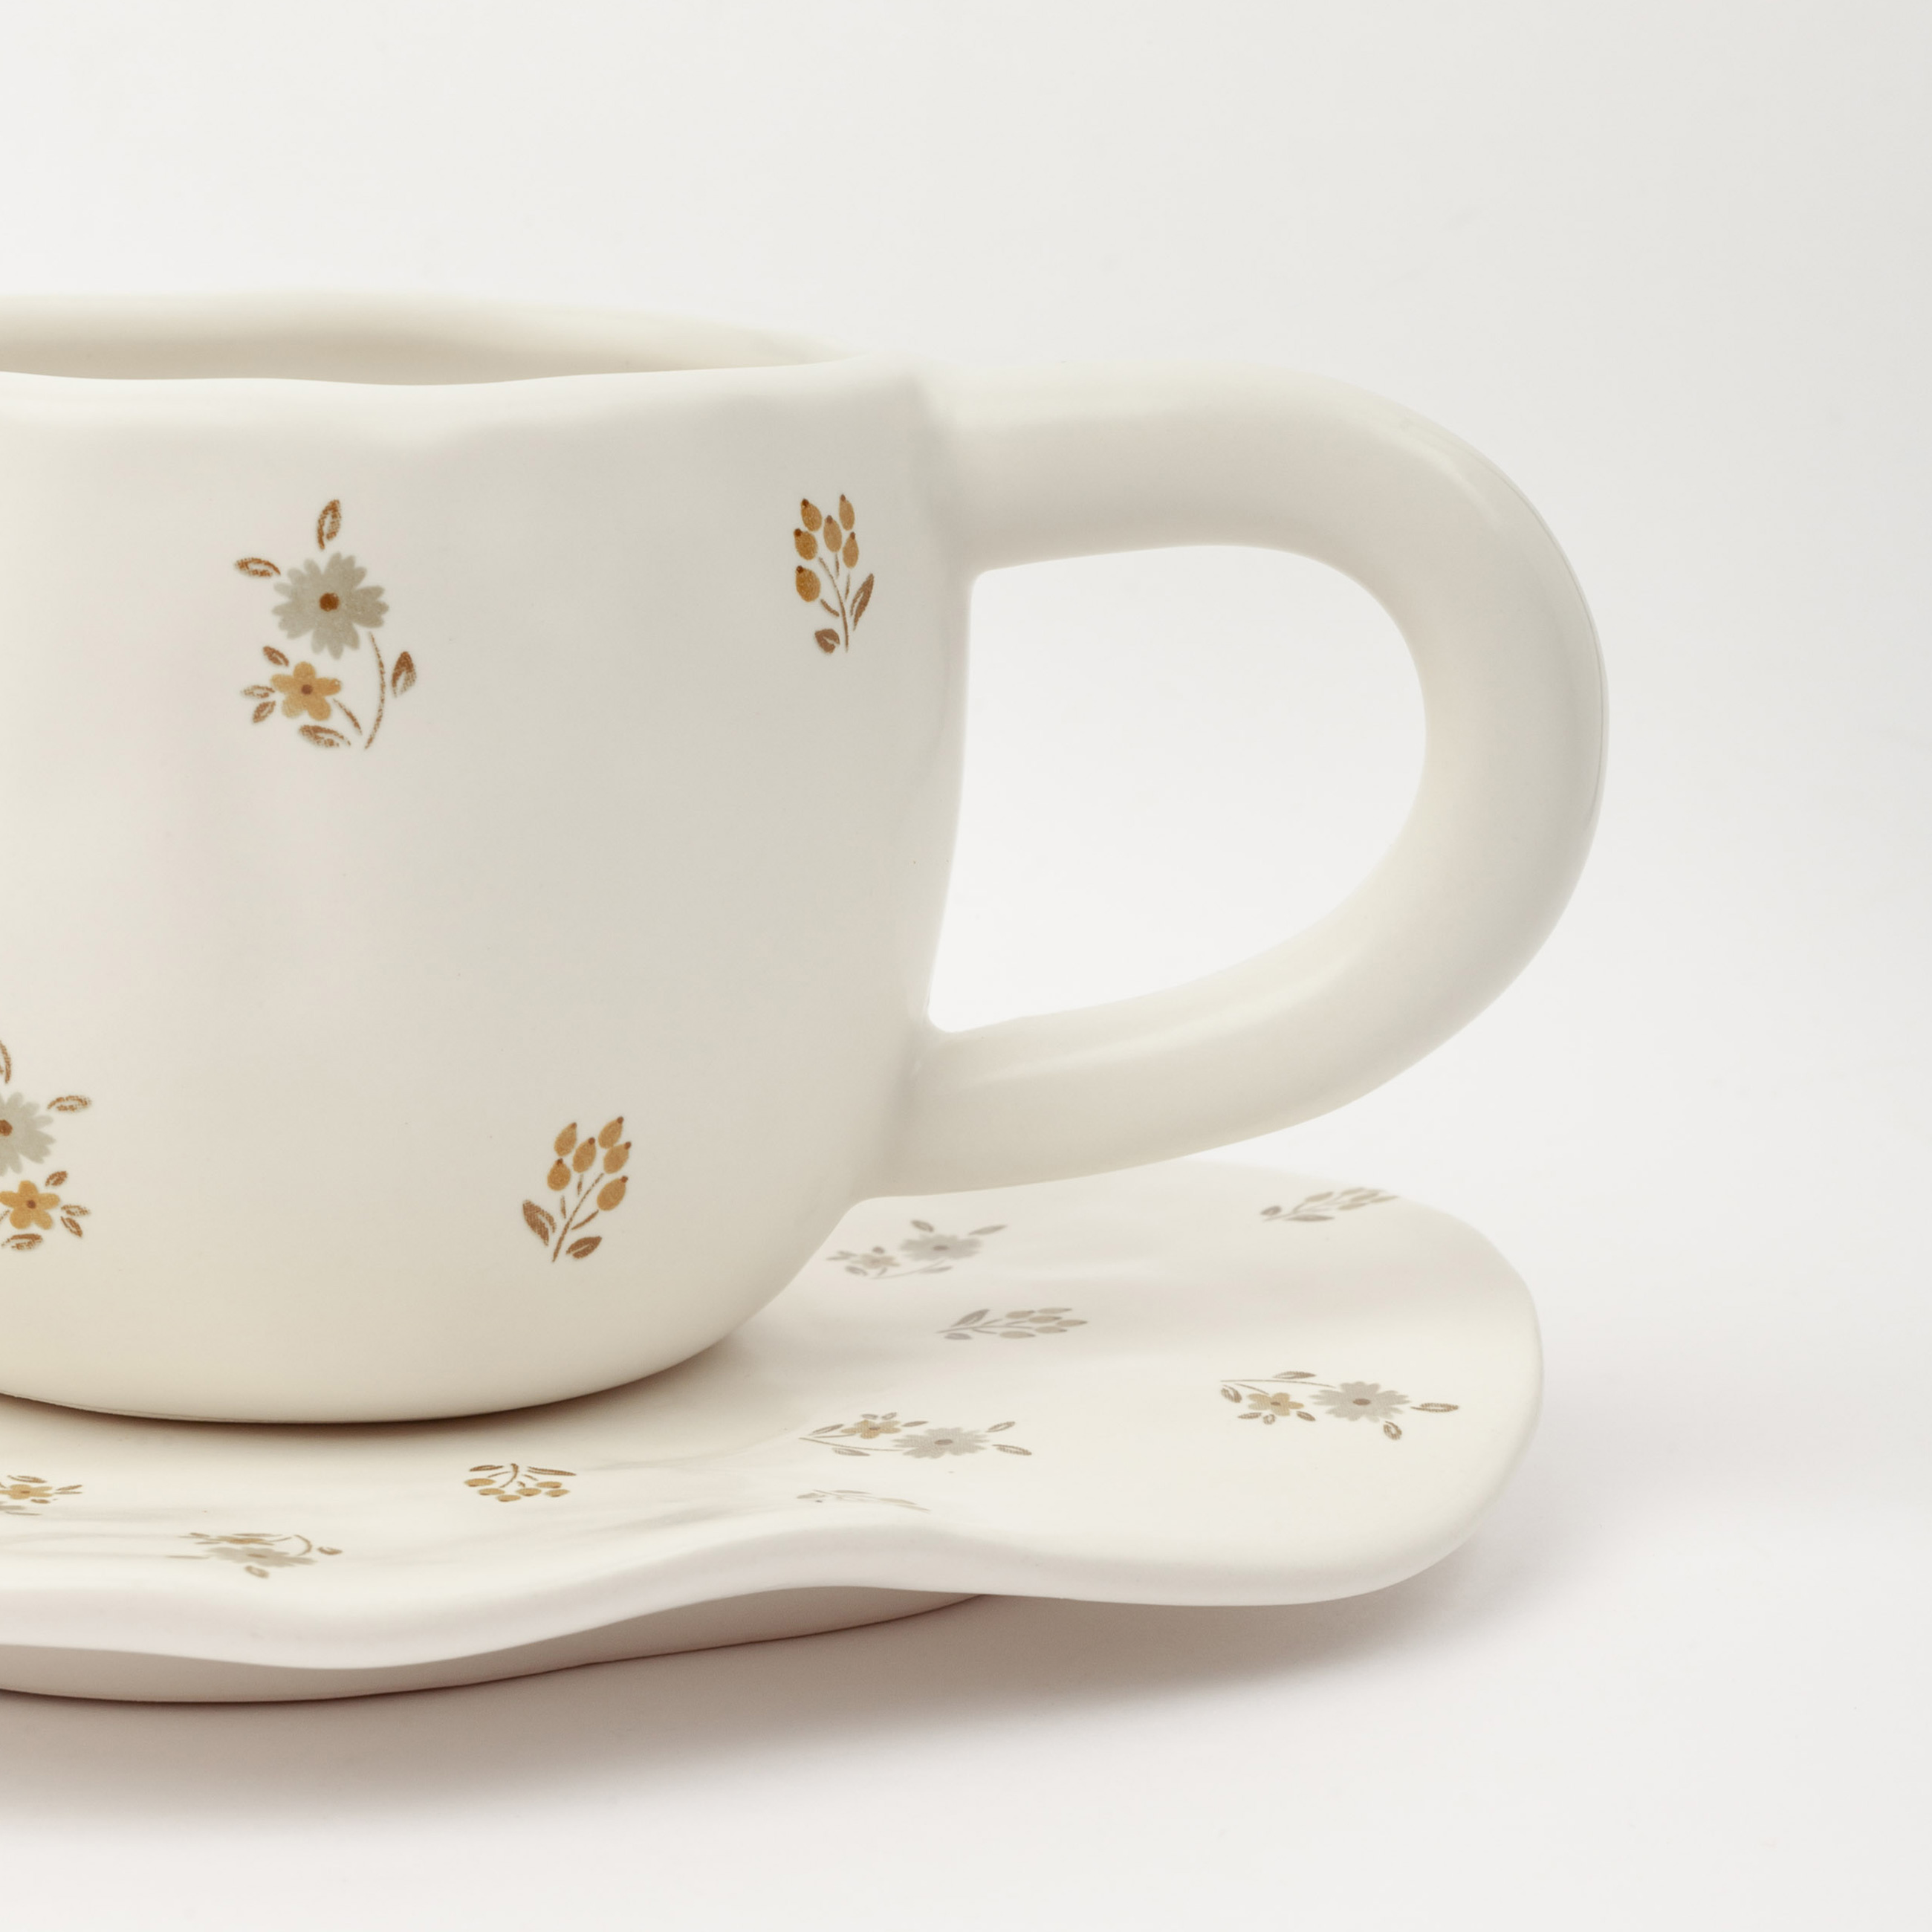 Пара чайная, 1 перс, 2 пр, 360 мл, керамика, молочная, Винтажные цветы, La flore изображение № 8